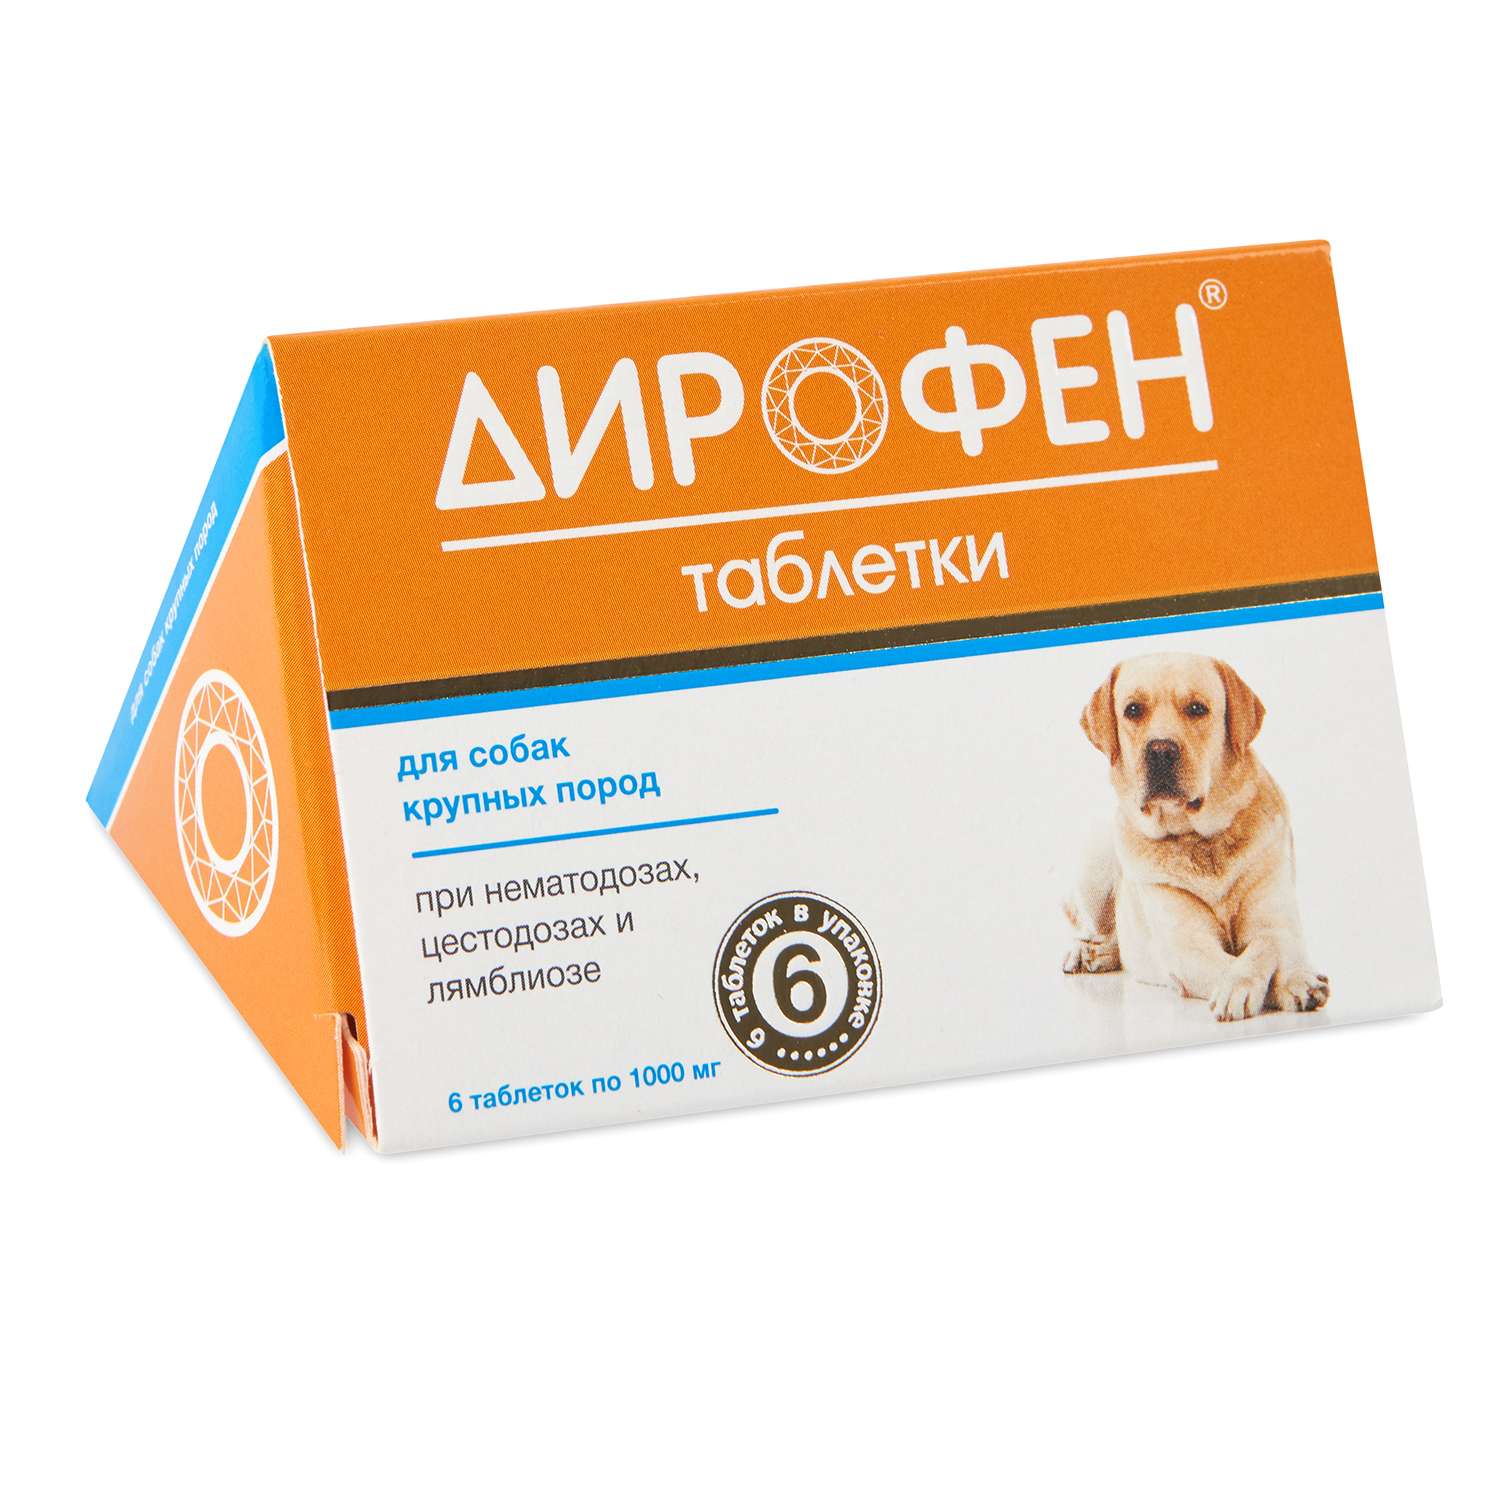 Антигельминтик для собак Apicenna Дирофен крупных пород №6 таблетки - фото 1